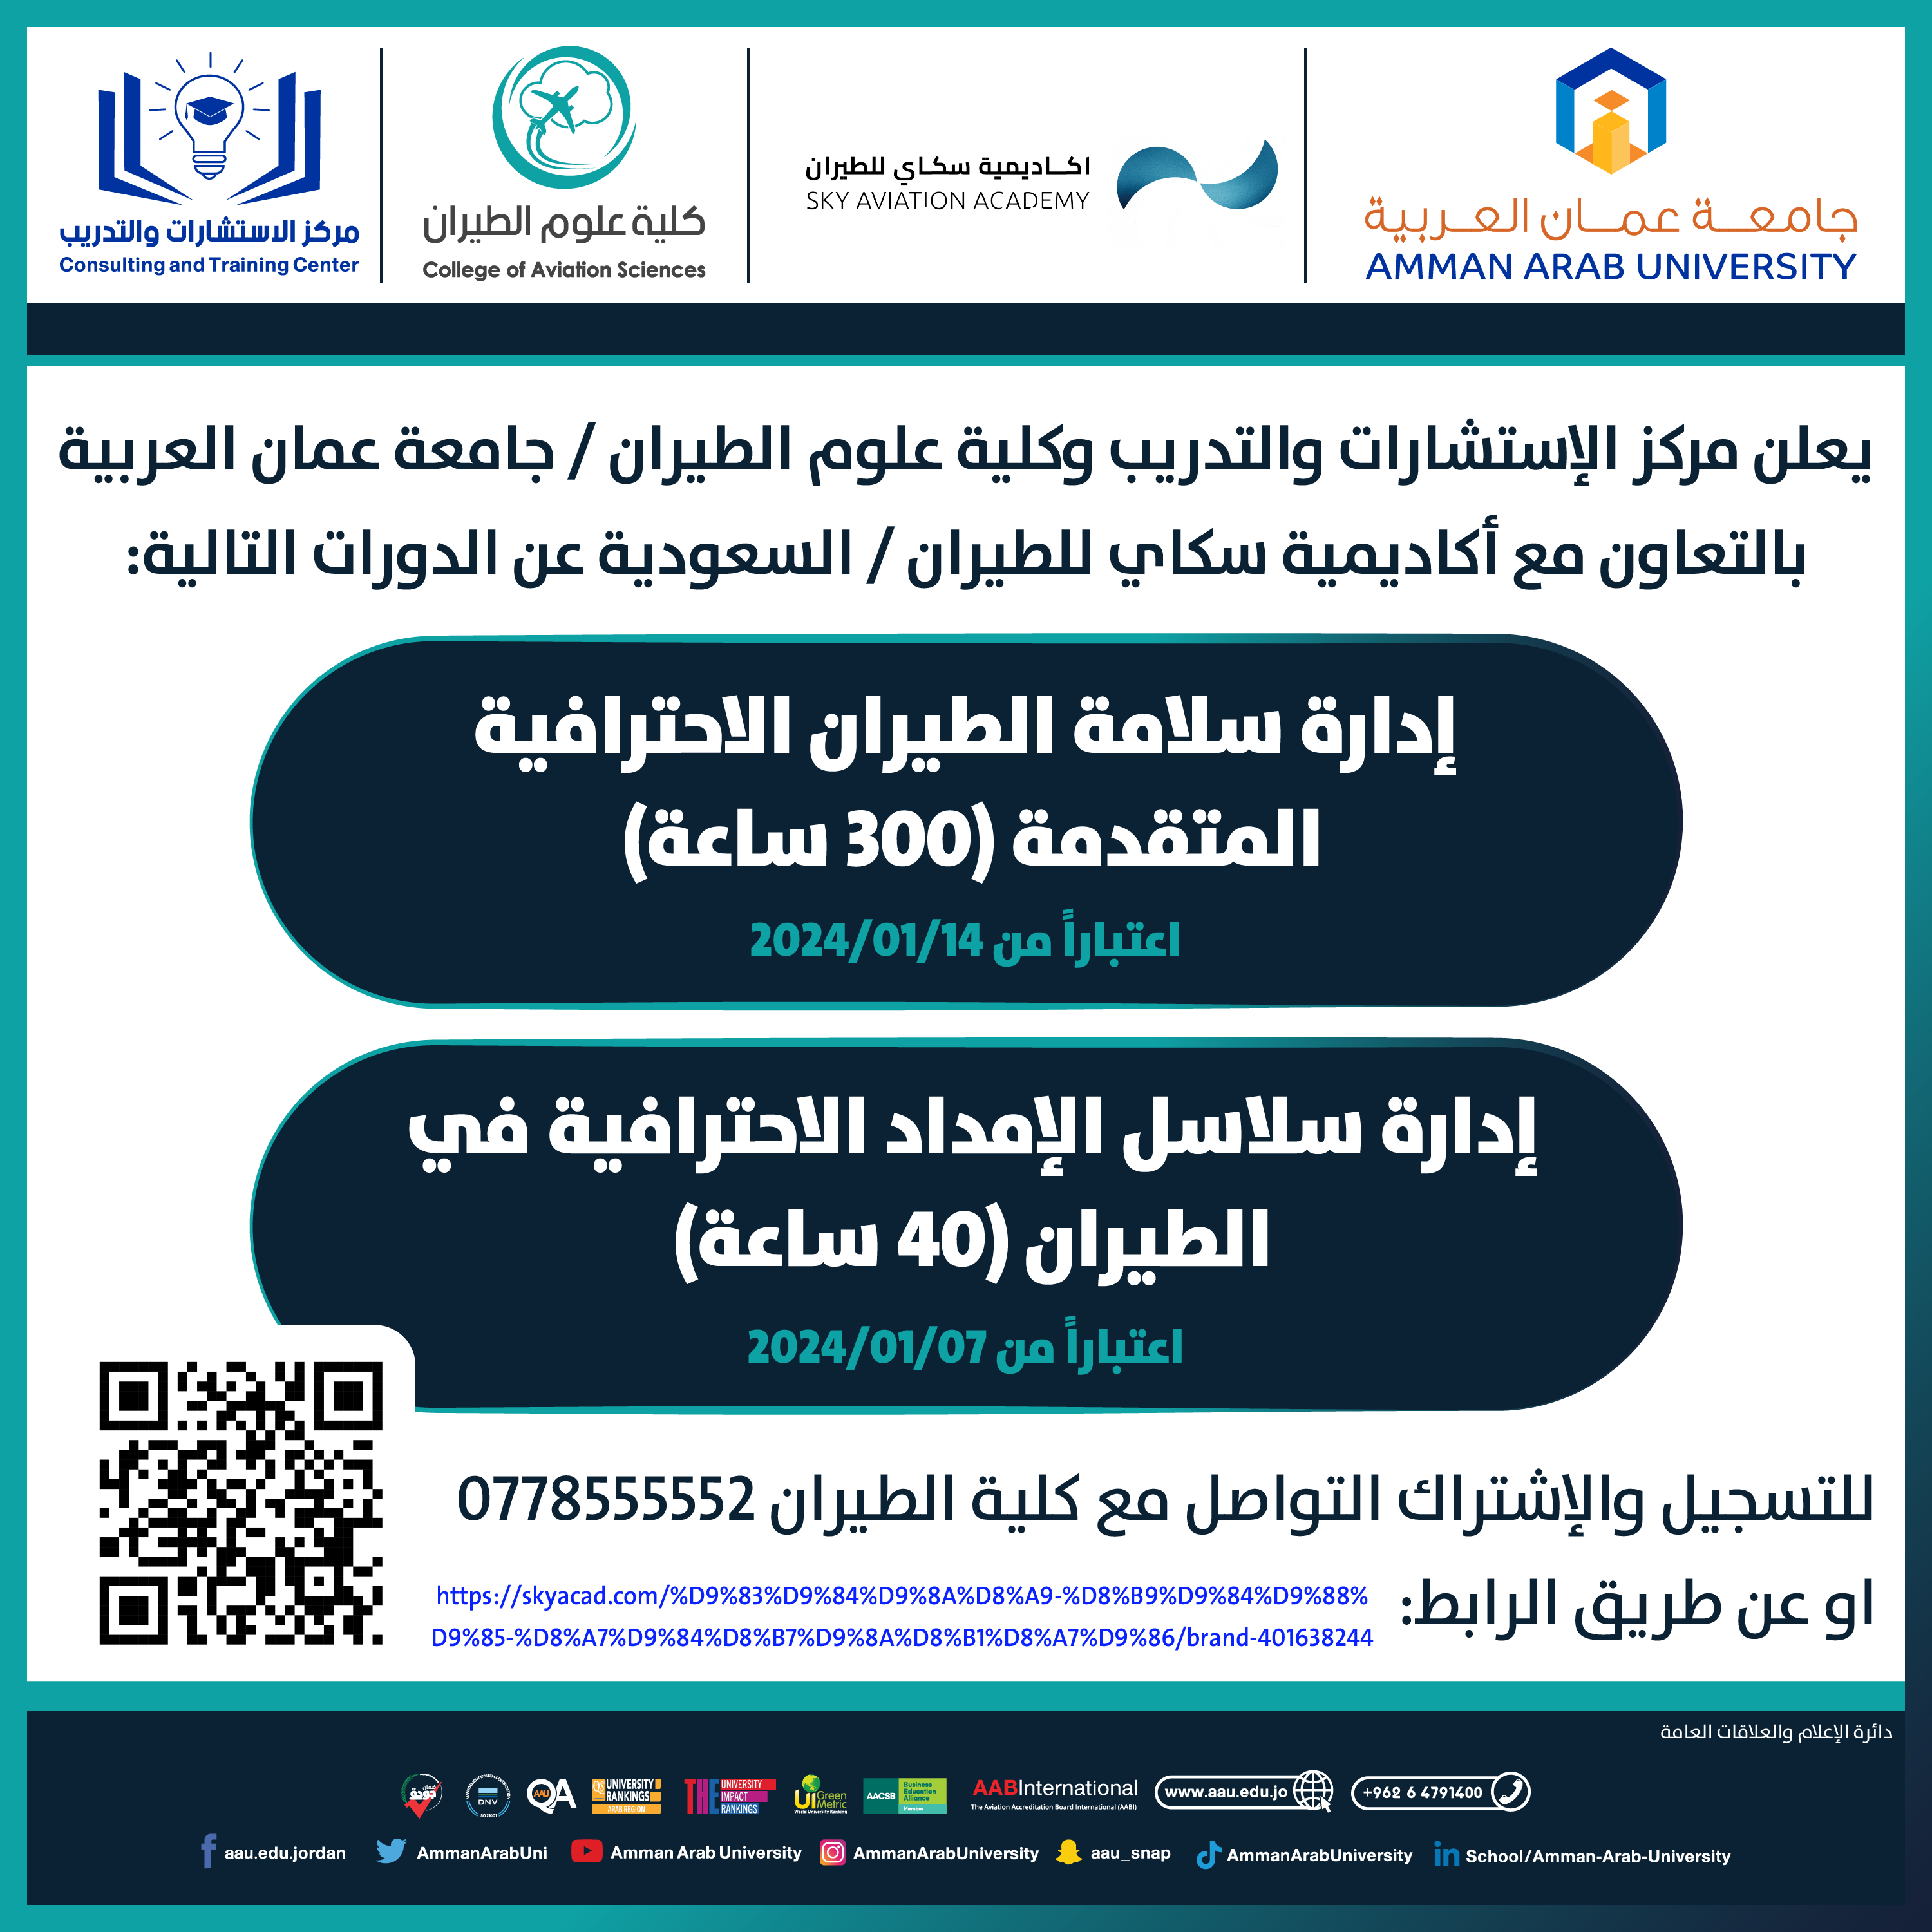 اعلانات دورات تدريبية بالتعاون مع اكاديمية سكاي للطيران/السعودية